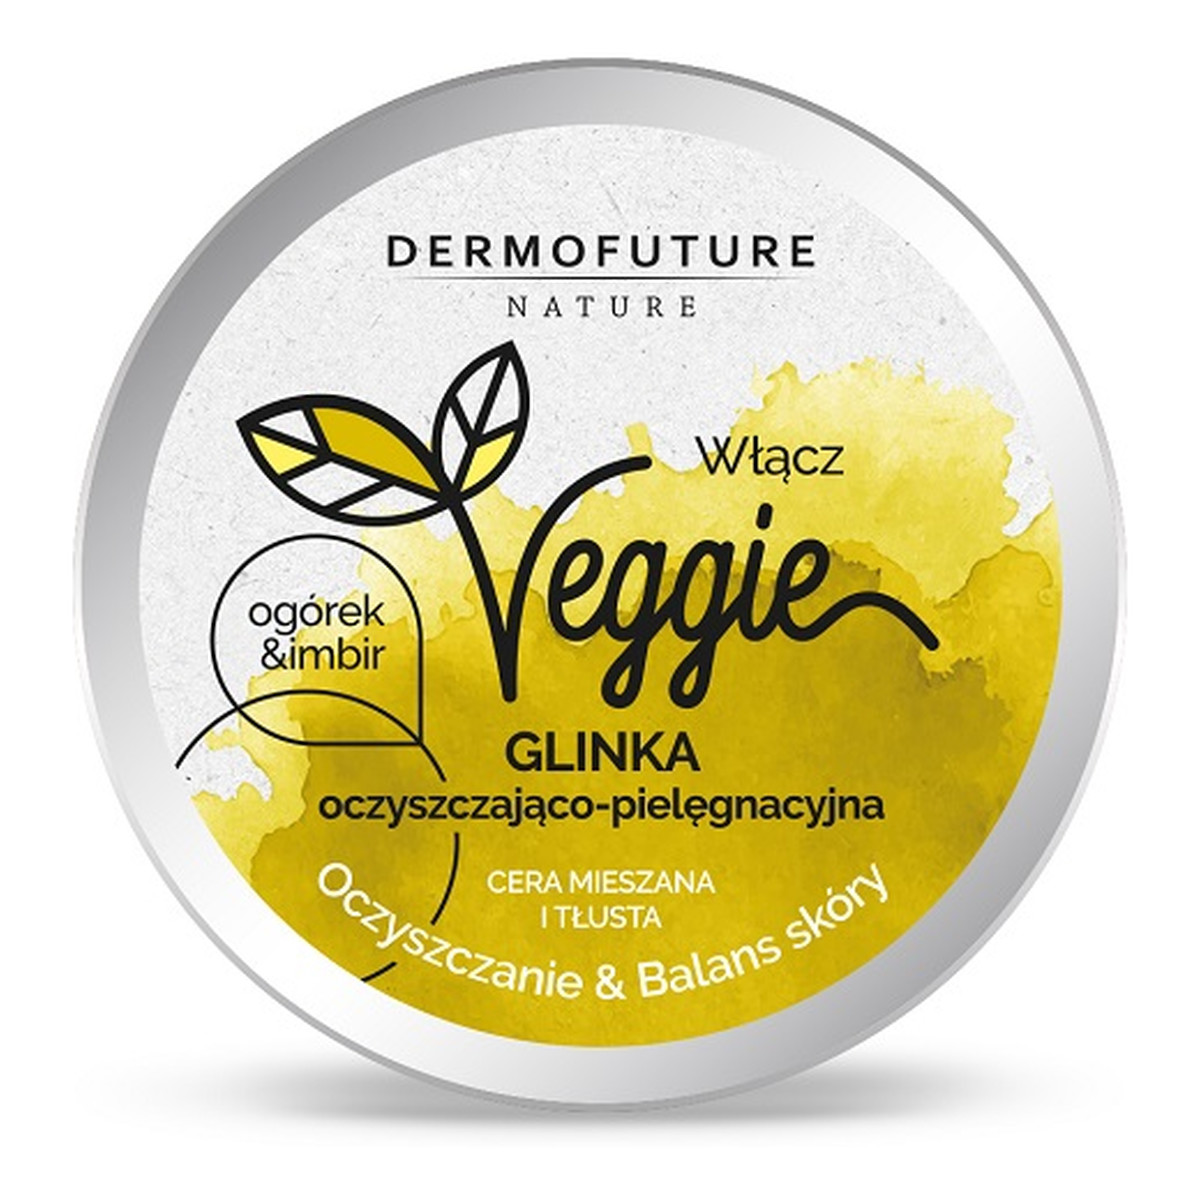 DermoFuture Veggie clay cleansing skin balance glinka oczyszczająco-pielęgnacyjna cera mieszana i tłusta ogórek & imbir 150ml